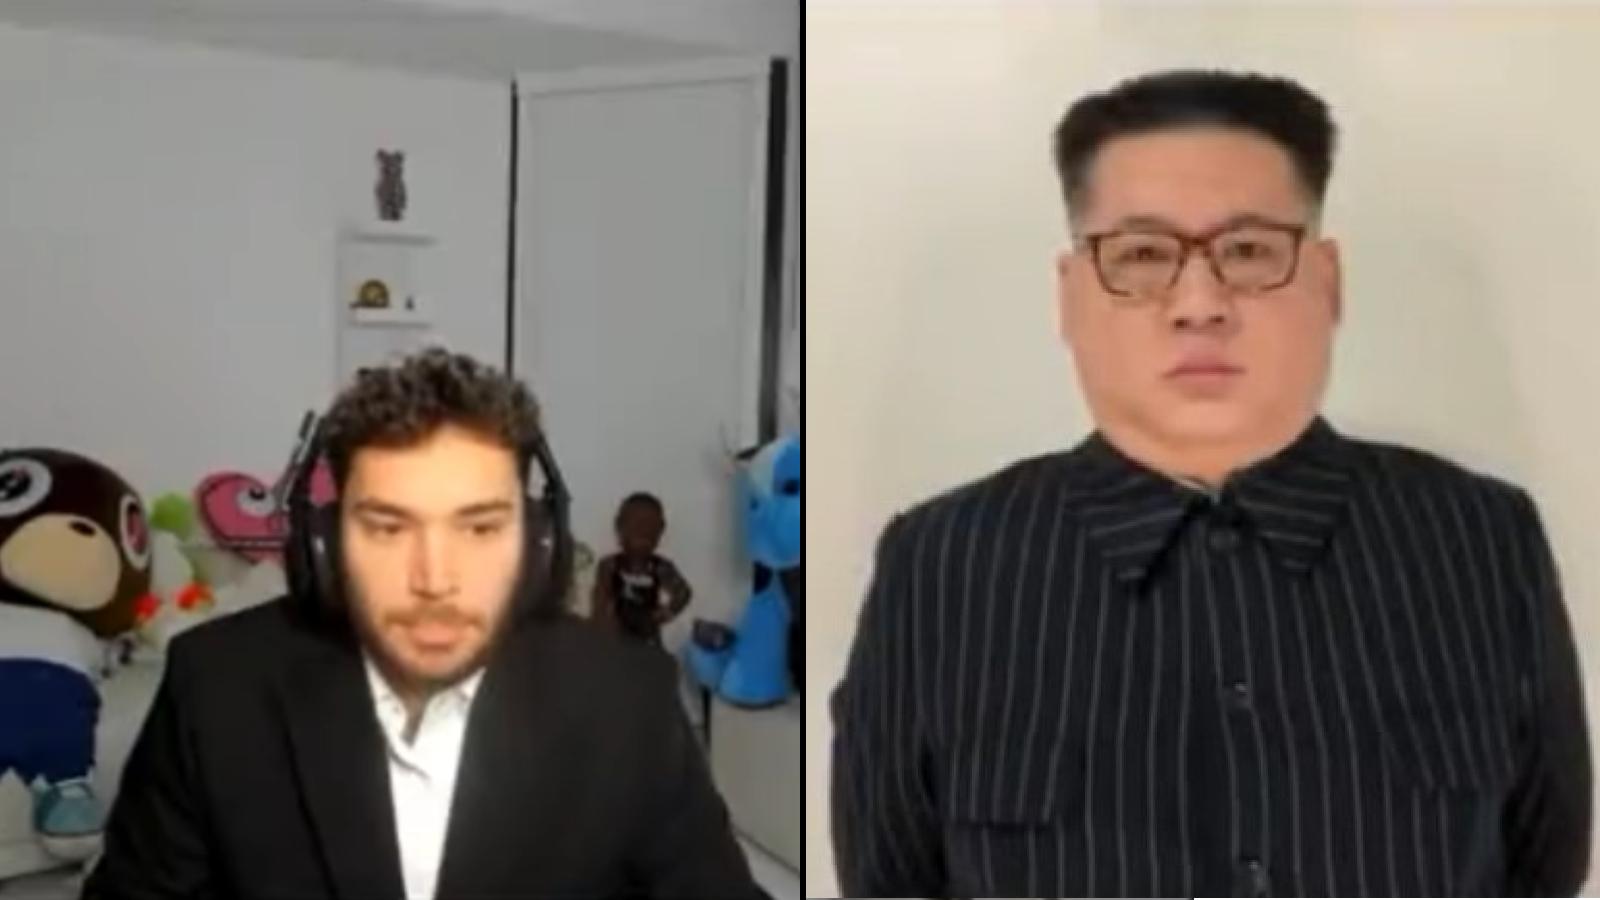 Adin Ross interviews "Kim Jong Un"